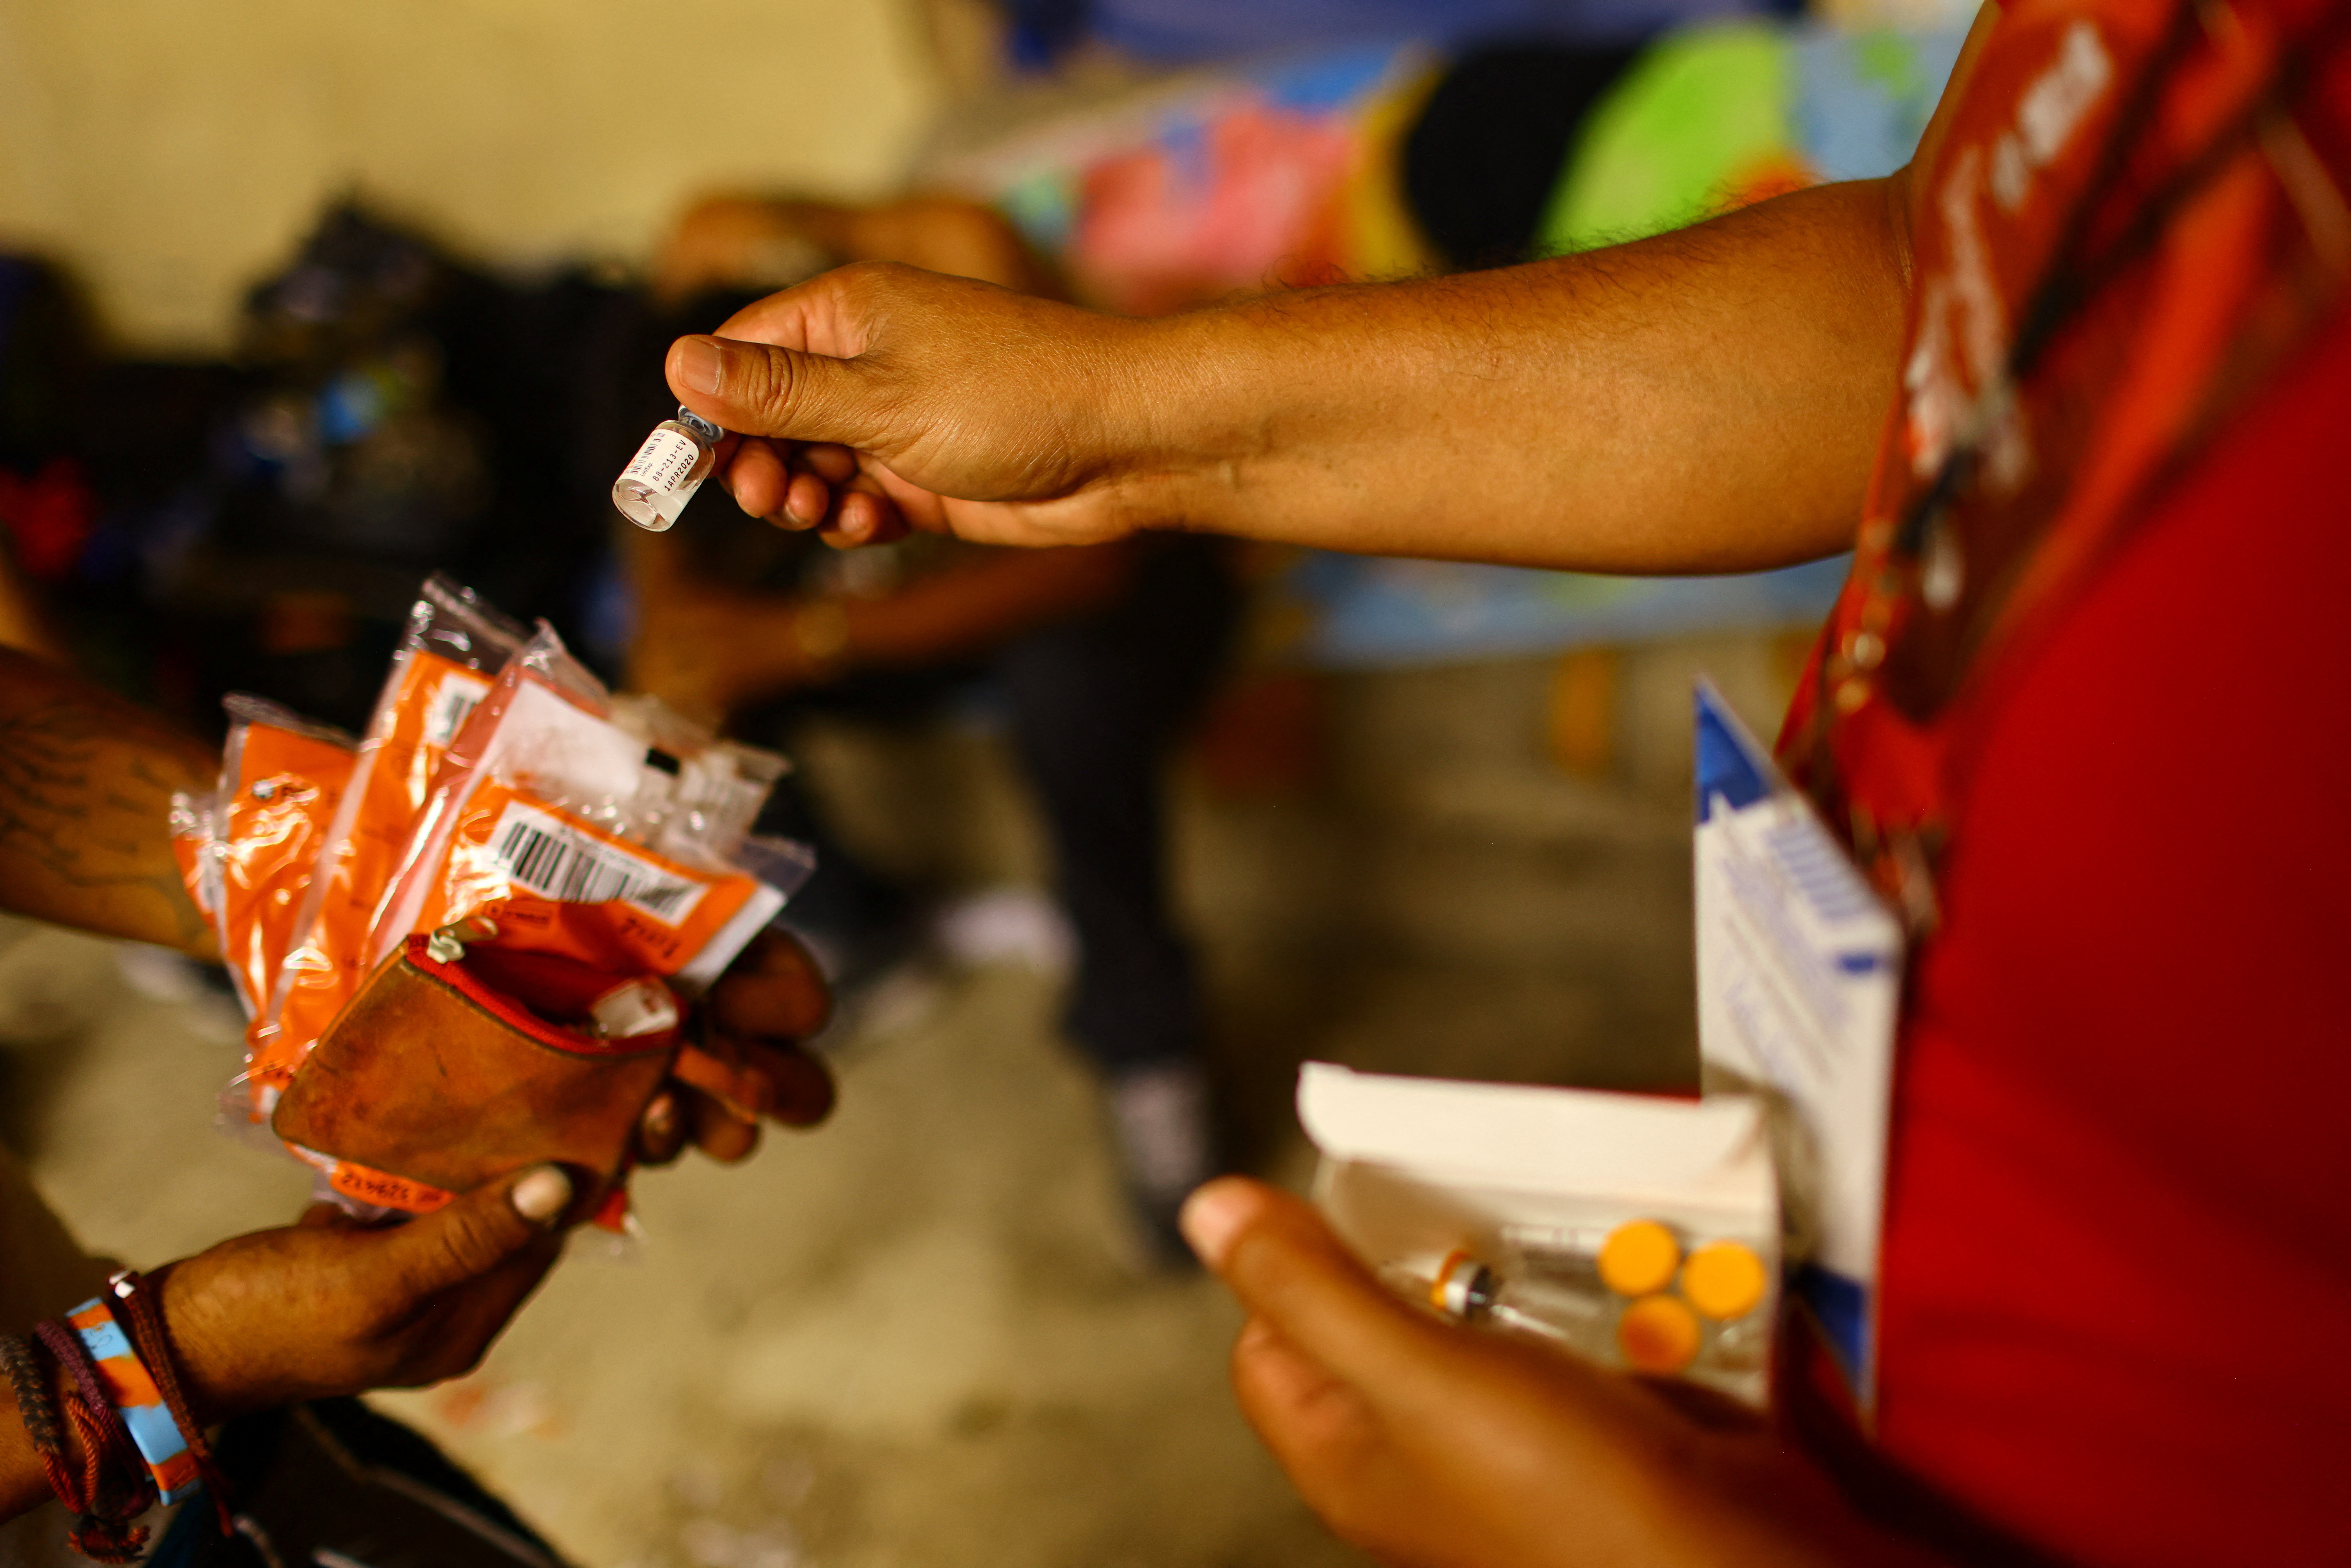 El uso de fentanilo se extiende cada vez más en México